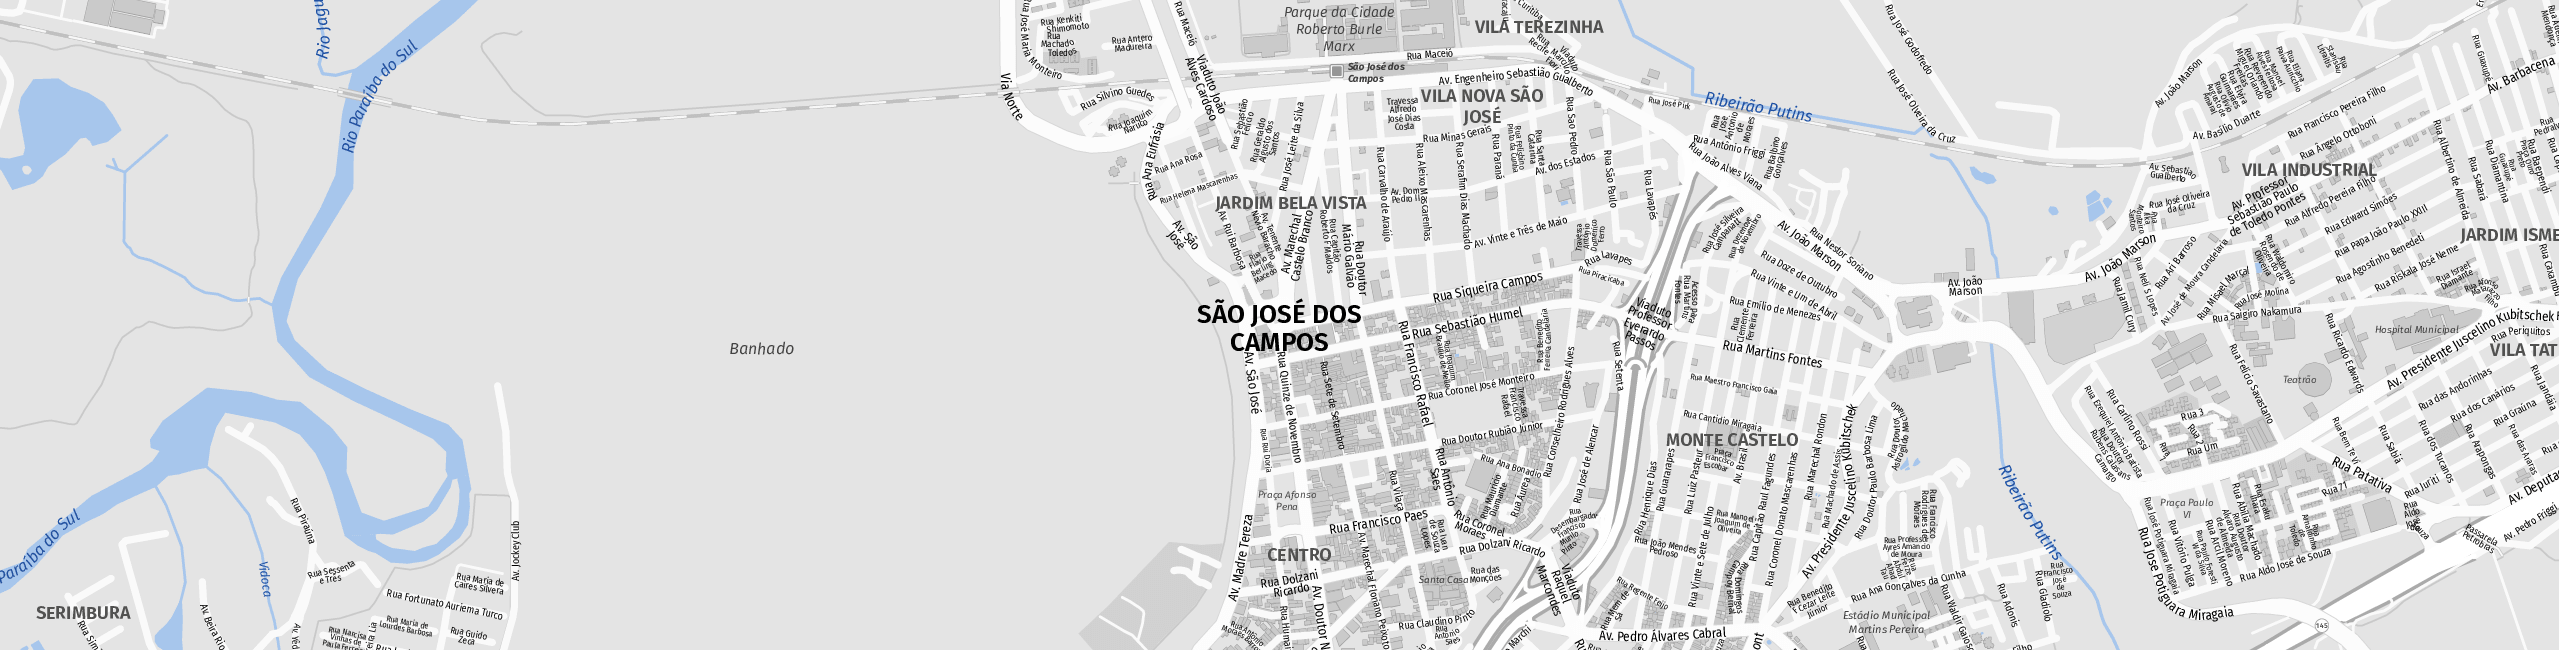 Stadtplan São José dos Campos zum Downloaden.